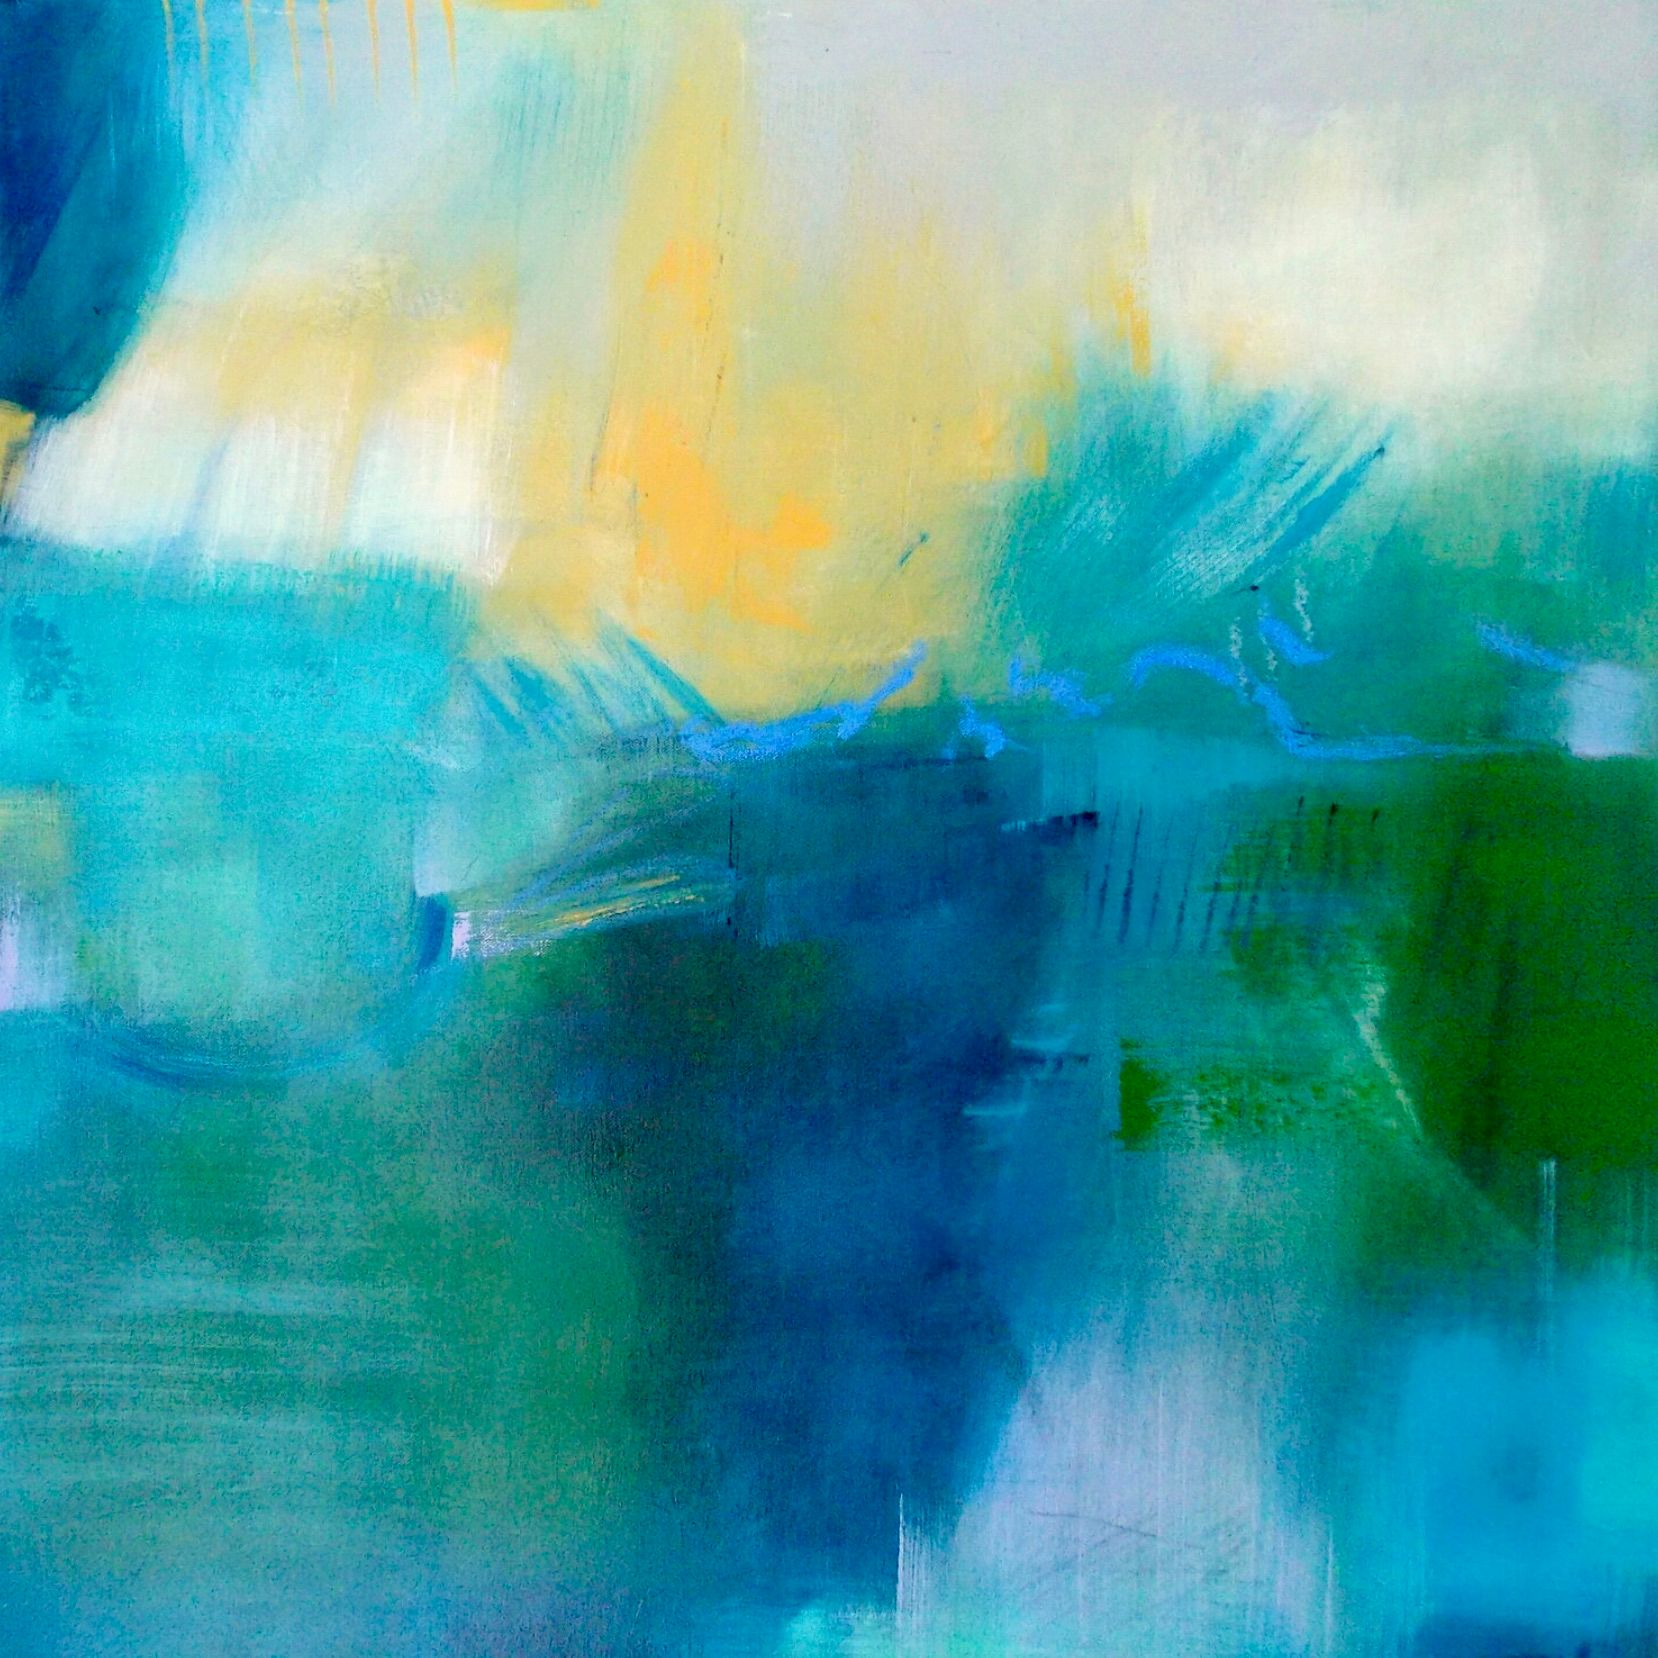 克里斯塔-哈克的 "湖边的日出 "这幅抽象的彩色画作，展示了一个只有白色、绿色和蓝色的湖泊，并依次形成了对比。然后，另一种颜色被添加到旋转的运动中，使作品充满了大胆的绘画笔触和动作！！！